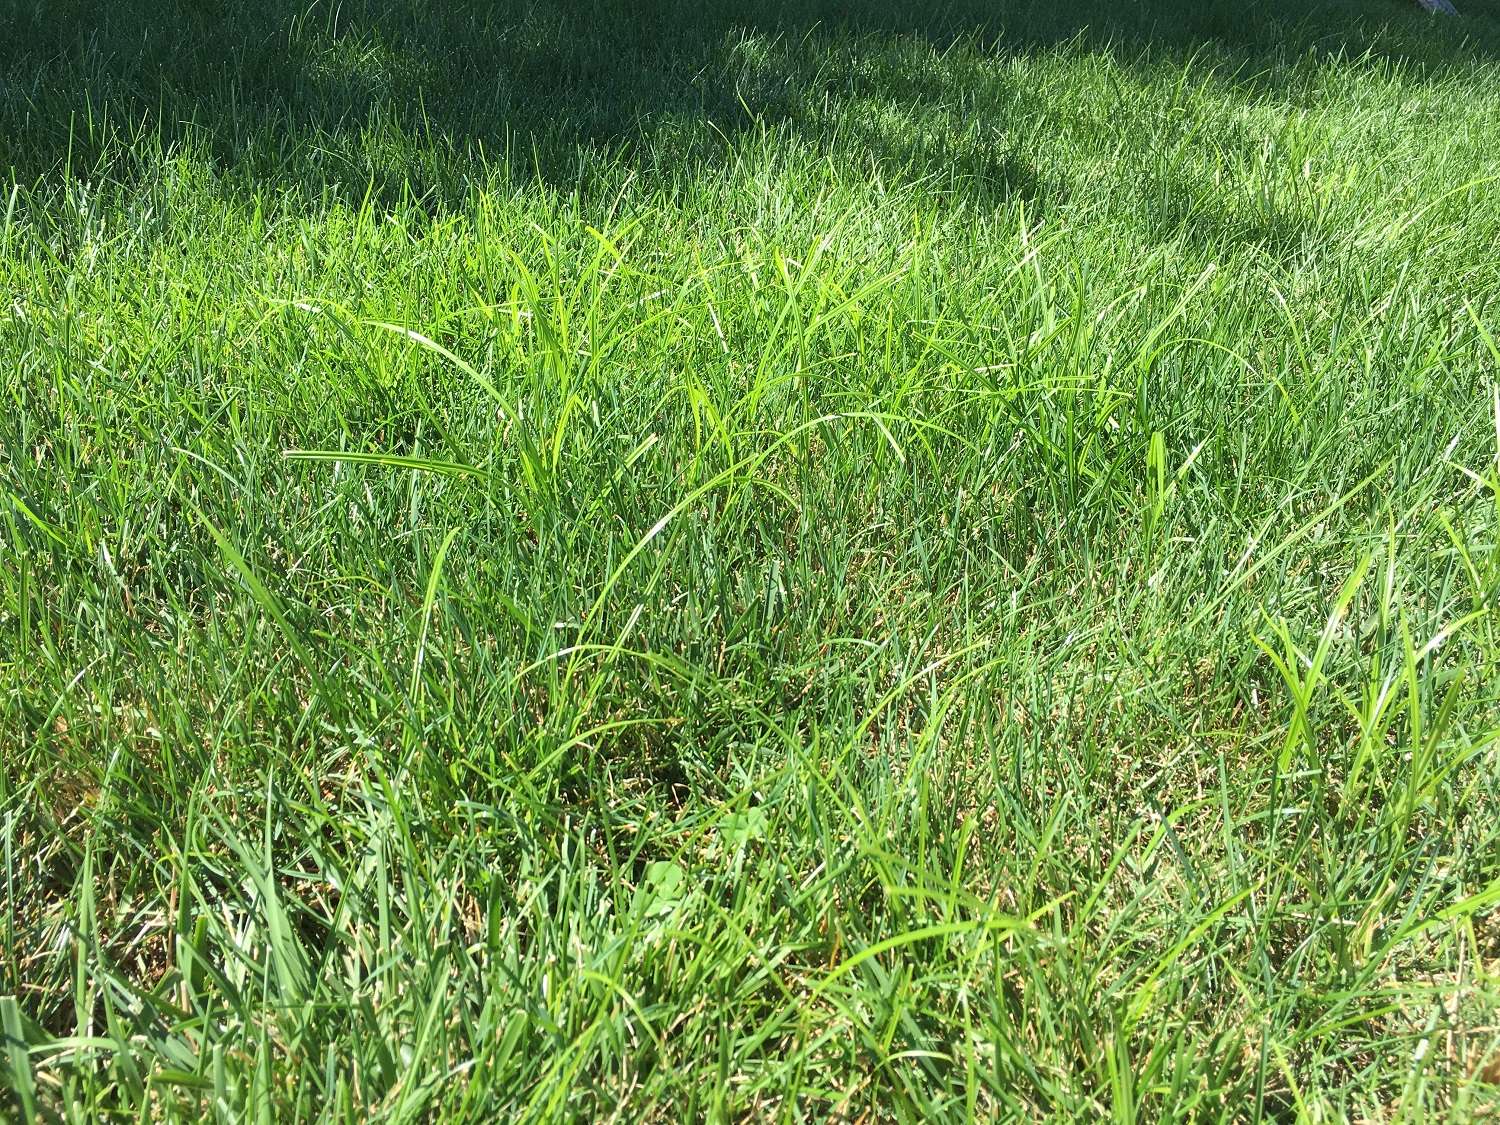 nutsedge weeds growing